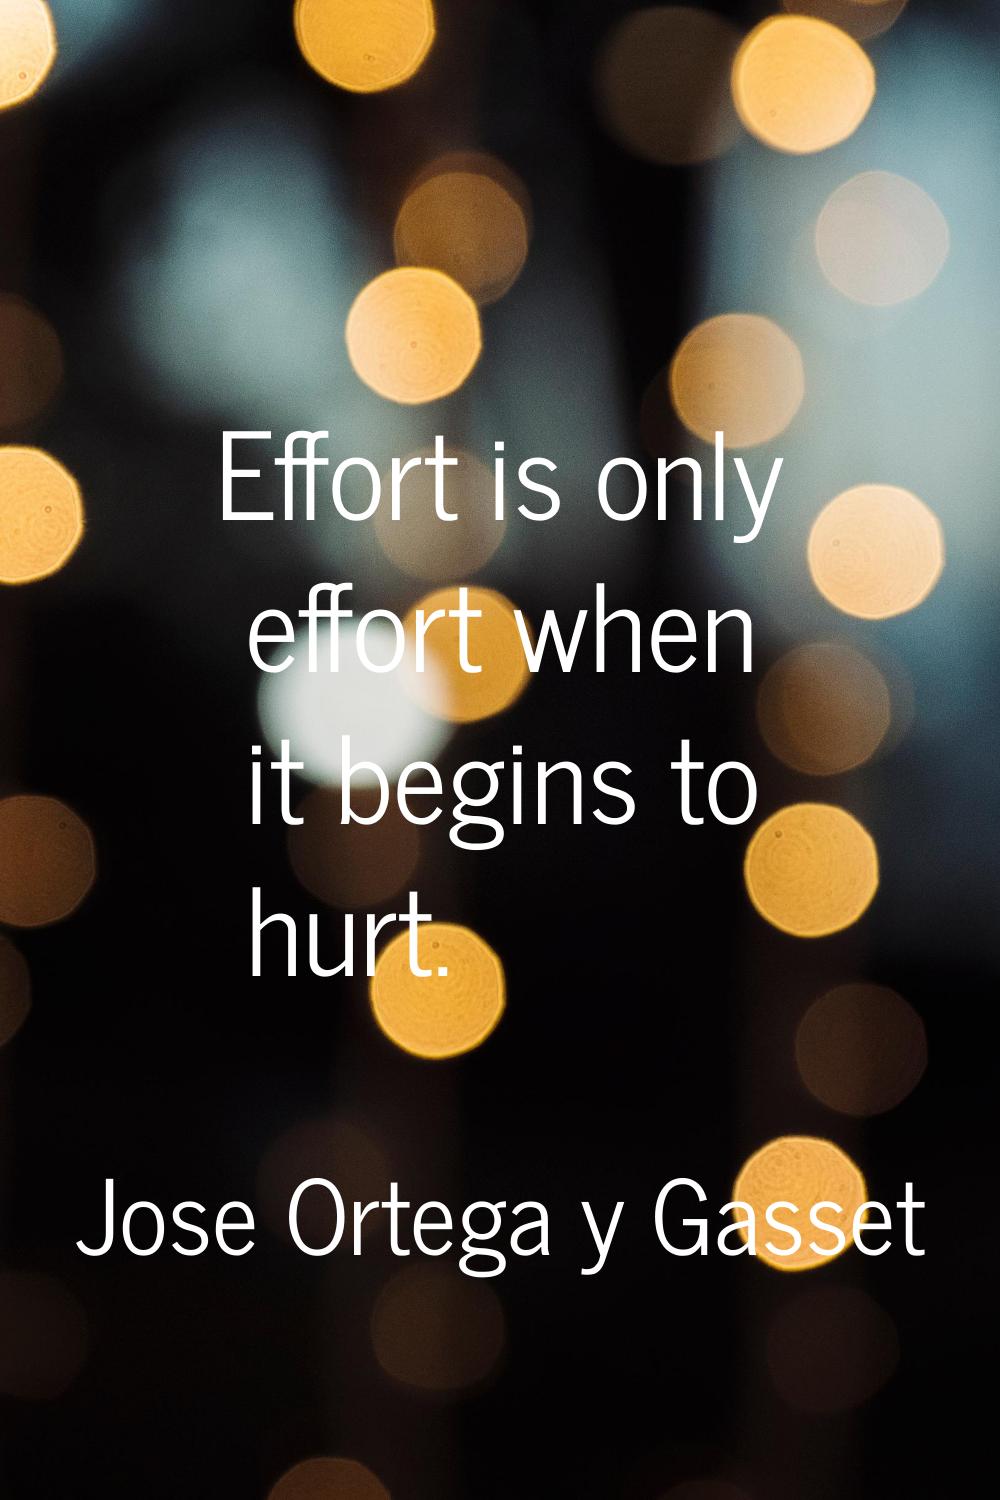 Effort is only effort when it begins to hurt.